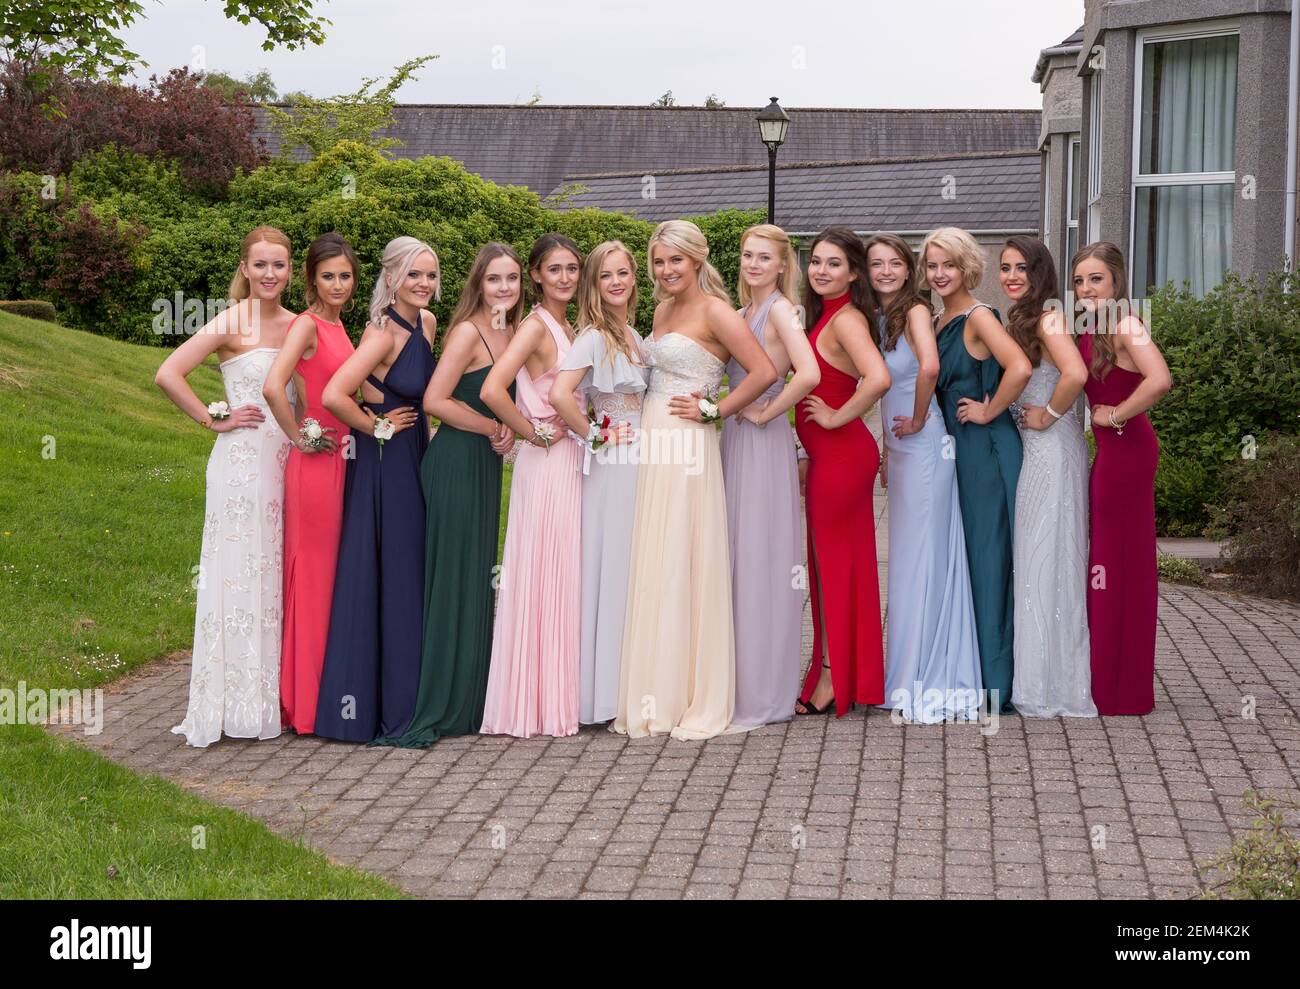 Filles ou jeunes femmes en robes pour leur fin de bal prom quand ils quittent l'école Banque D'Images